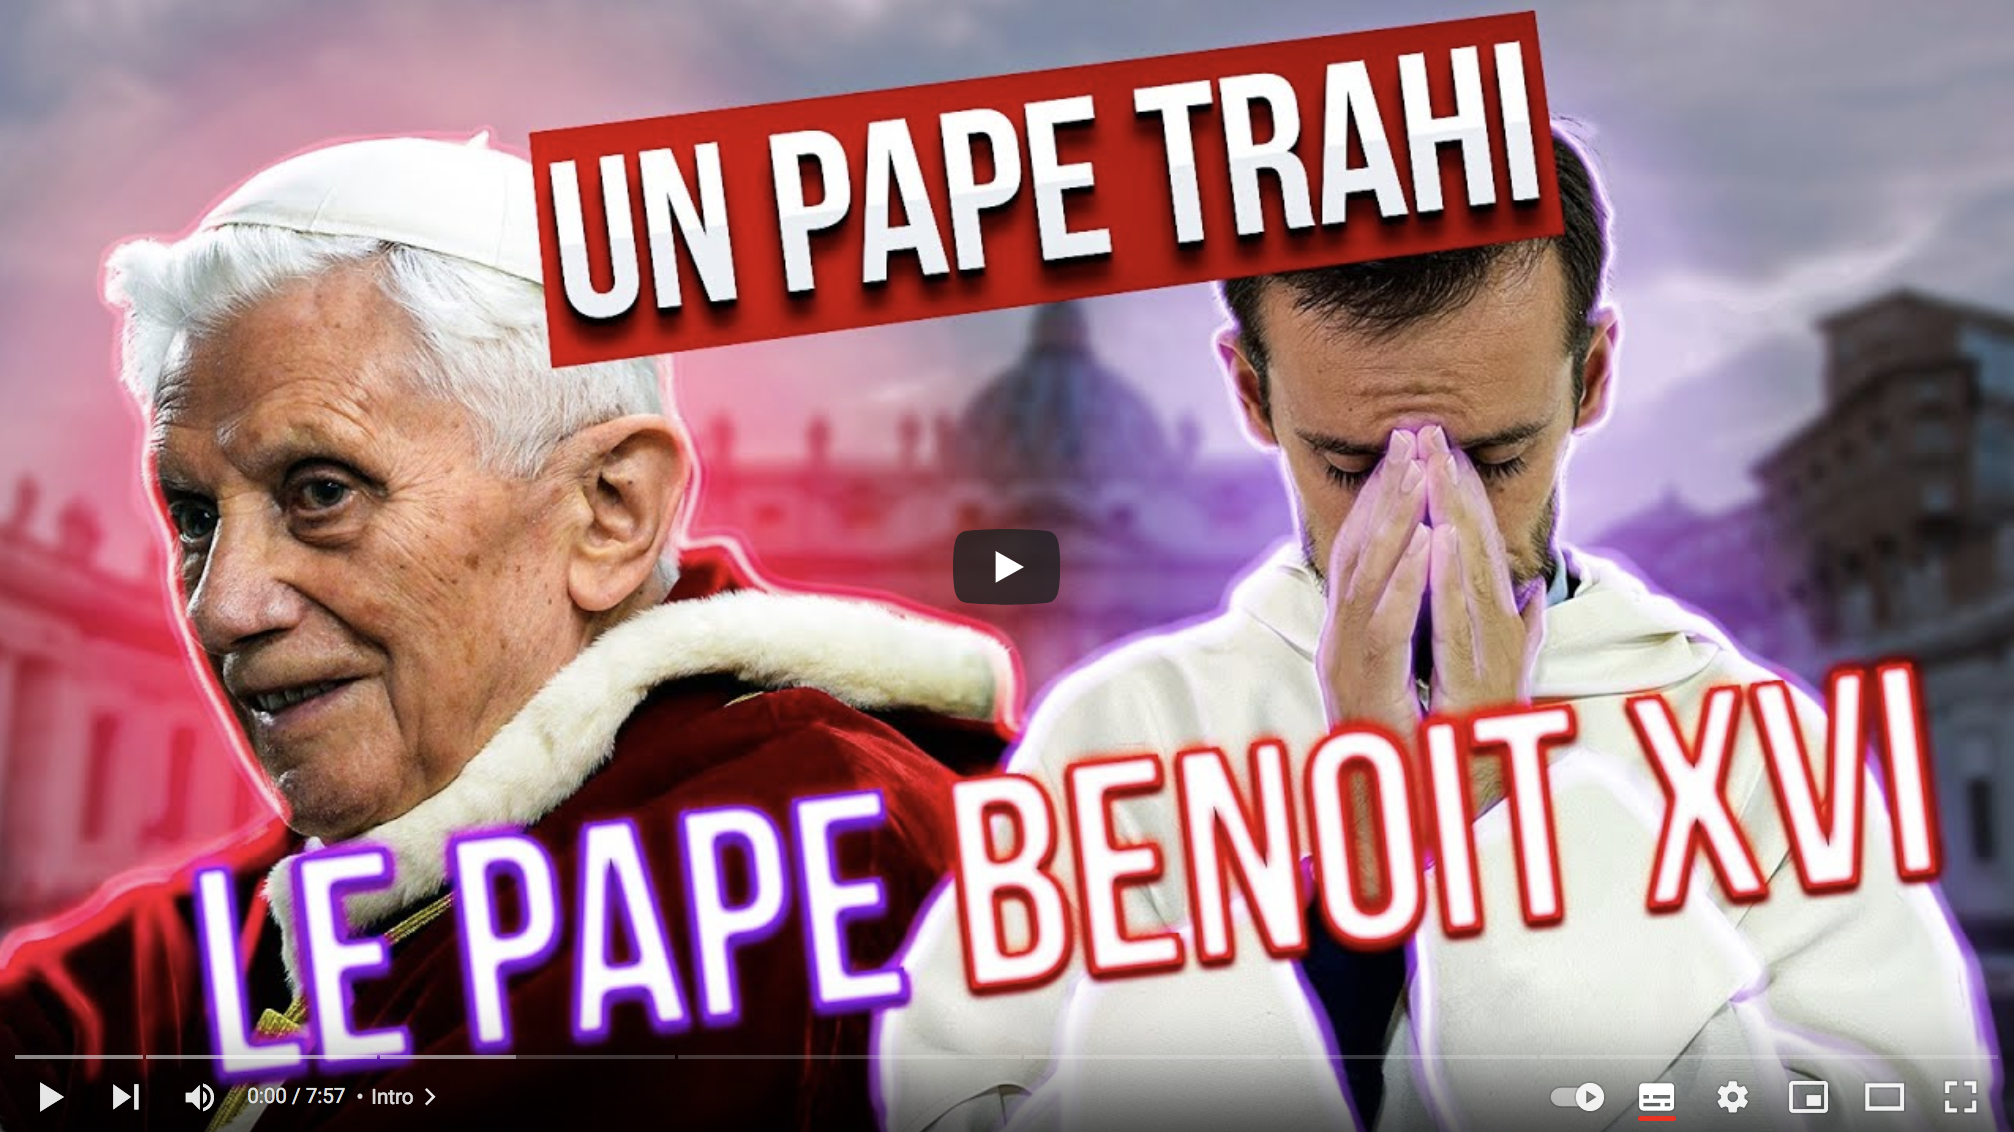 Benoît XVI, un pape trahi (Frère Paul Adrien)